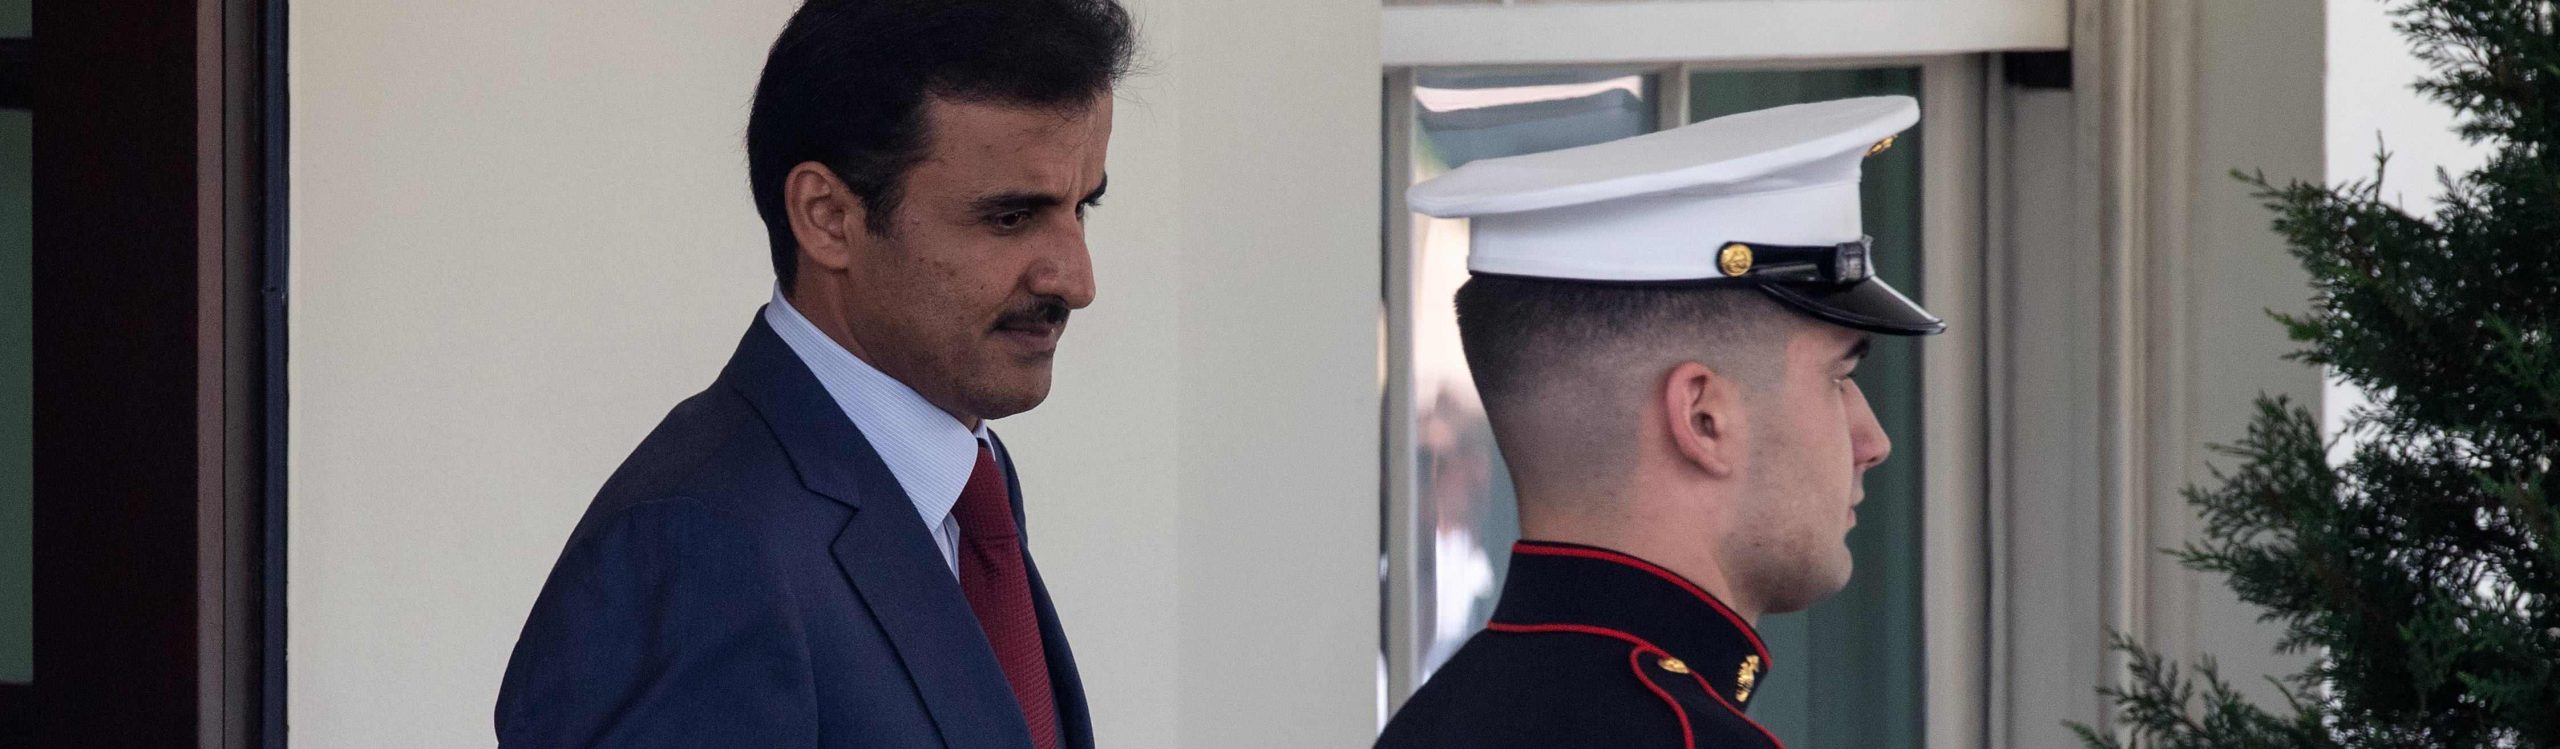 L'emiro del Qatar Tamim bin Hamad al-Thani mentre lascia la Casa Bianca (LaPresse)